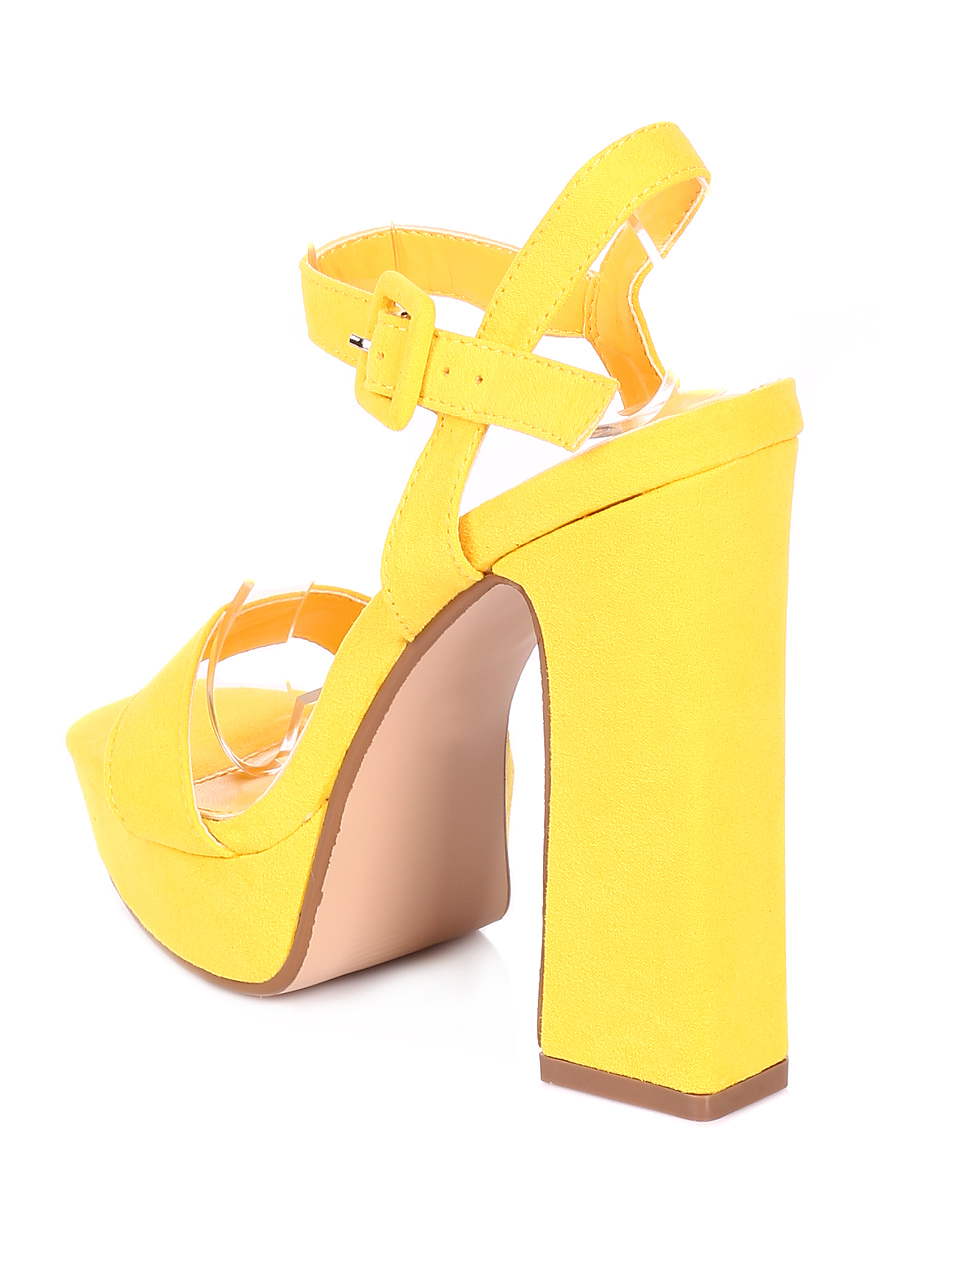 Елегантни дамски сандали на ток 4M-20096 yellow